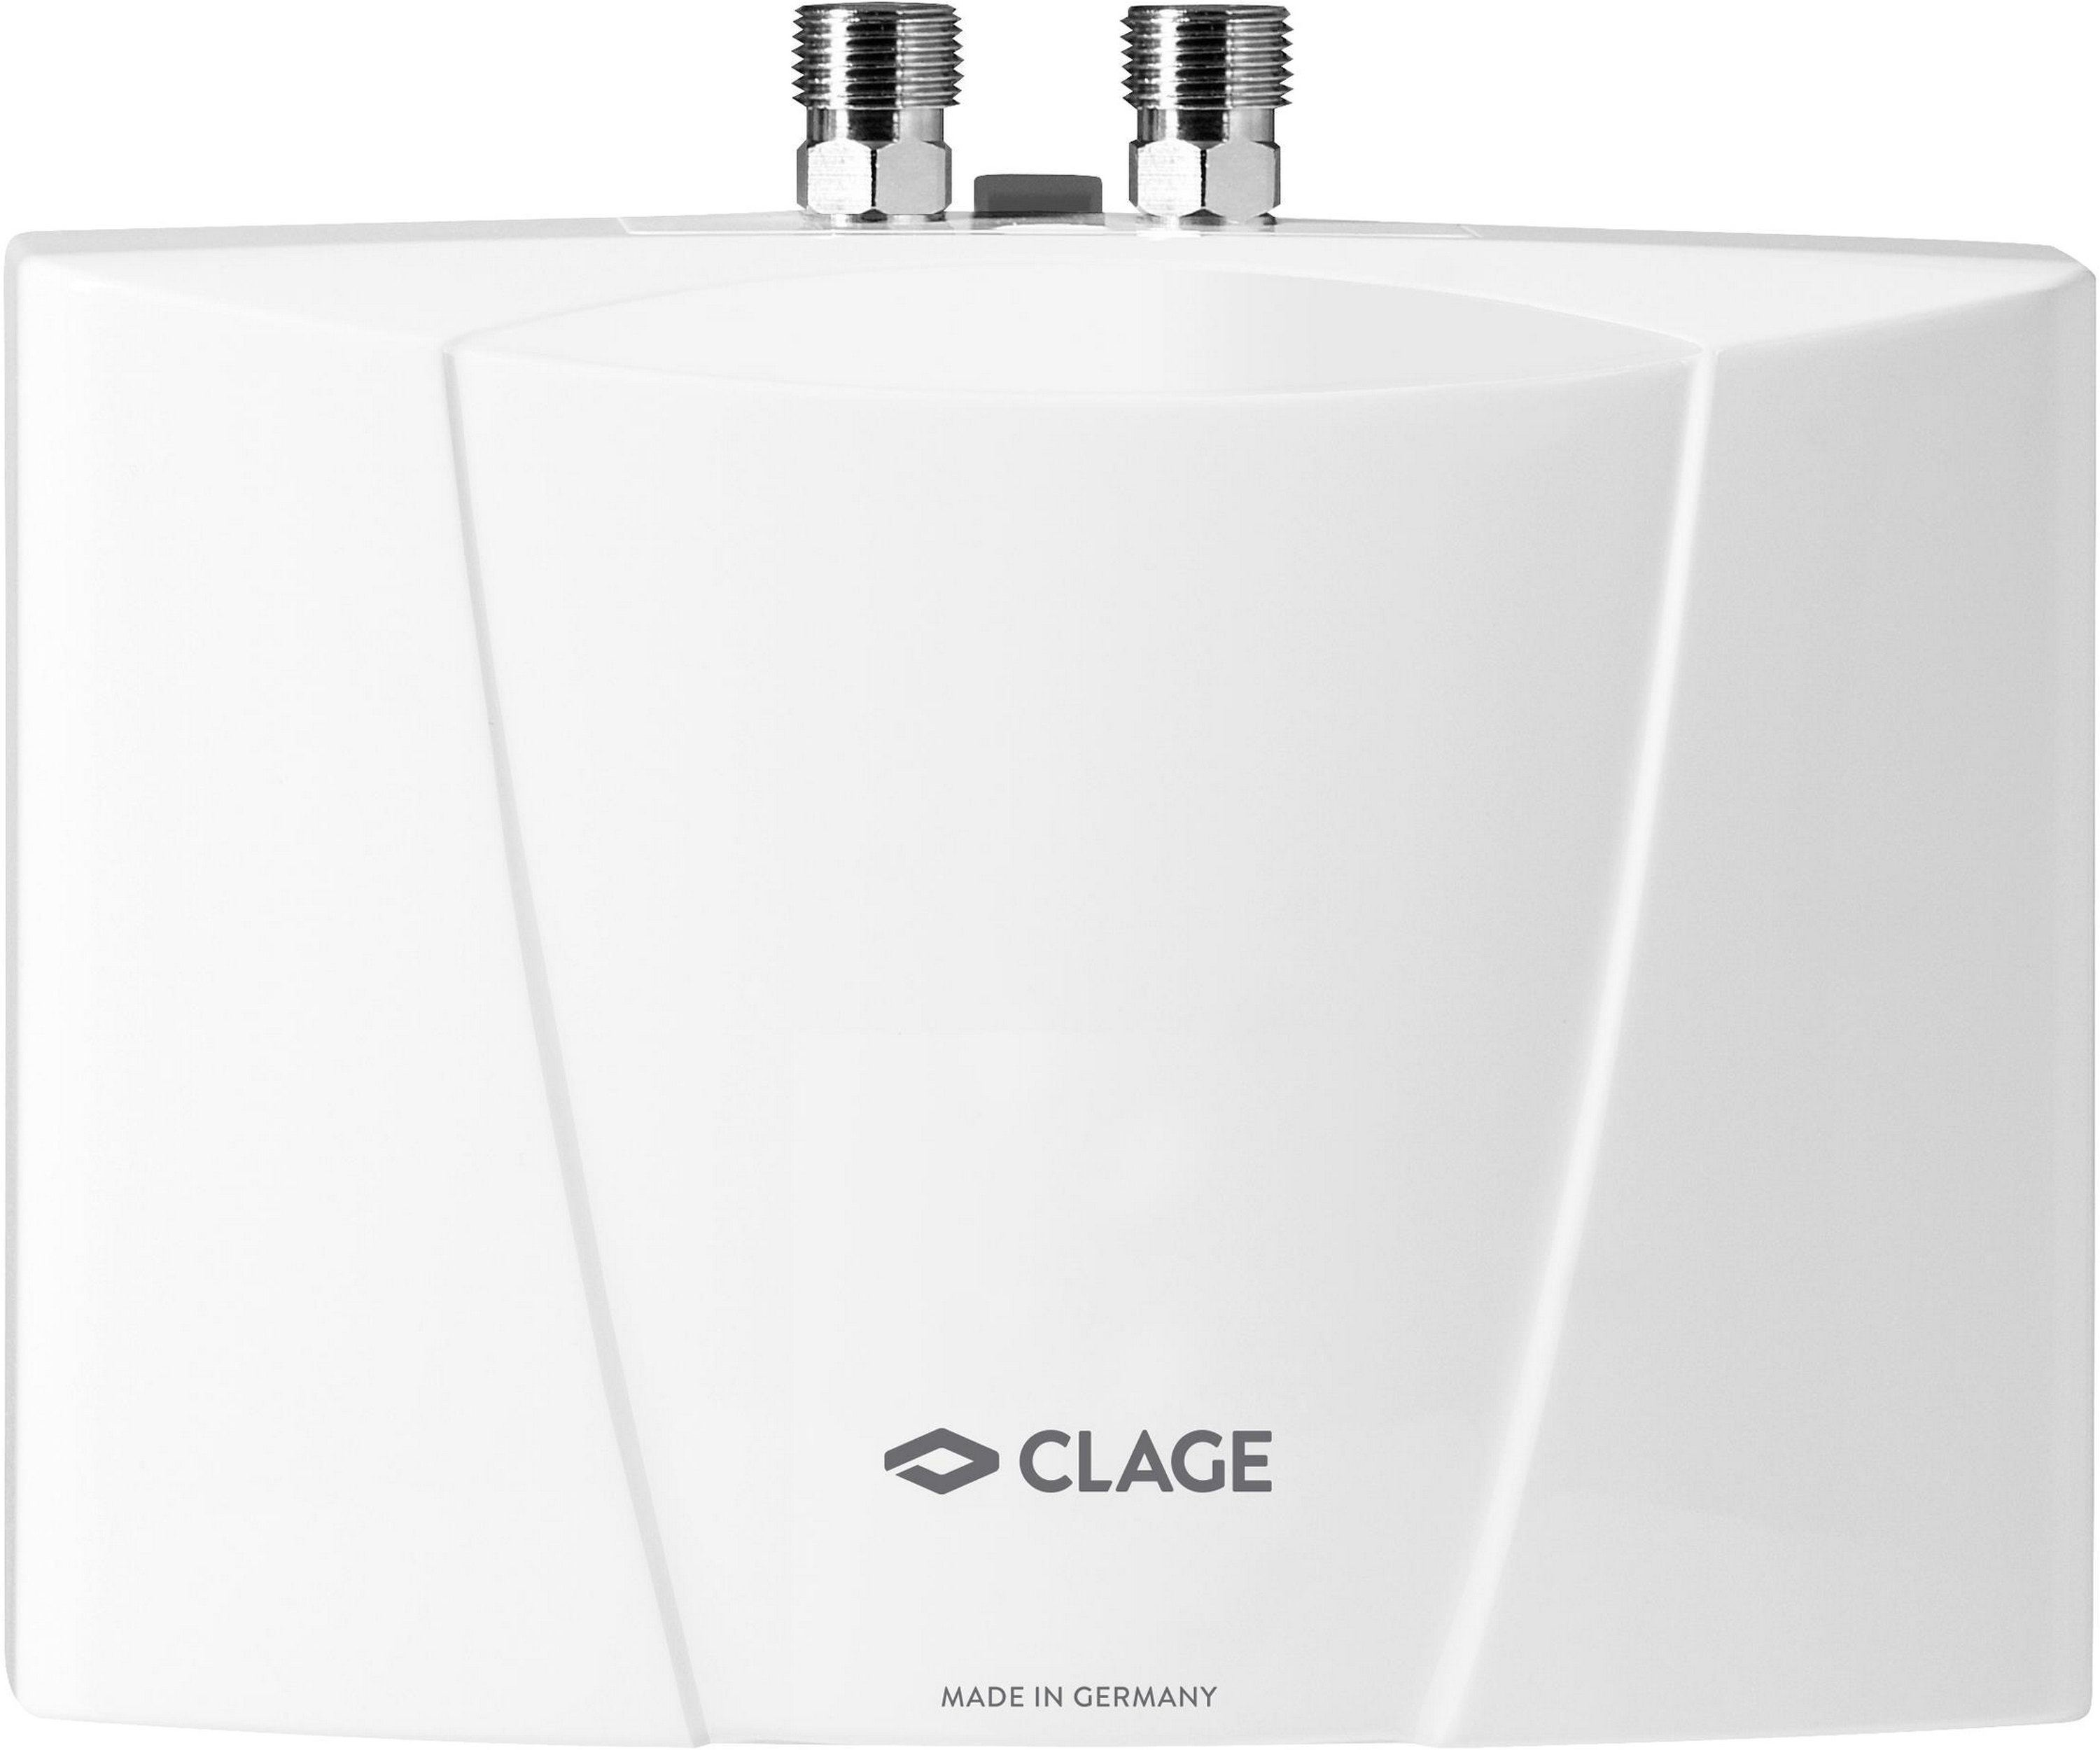 Цена проточный водонагреватель Clage MBH 3 в Днепре